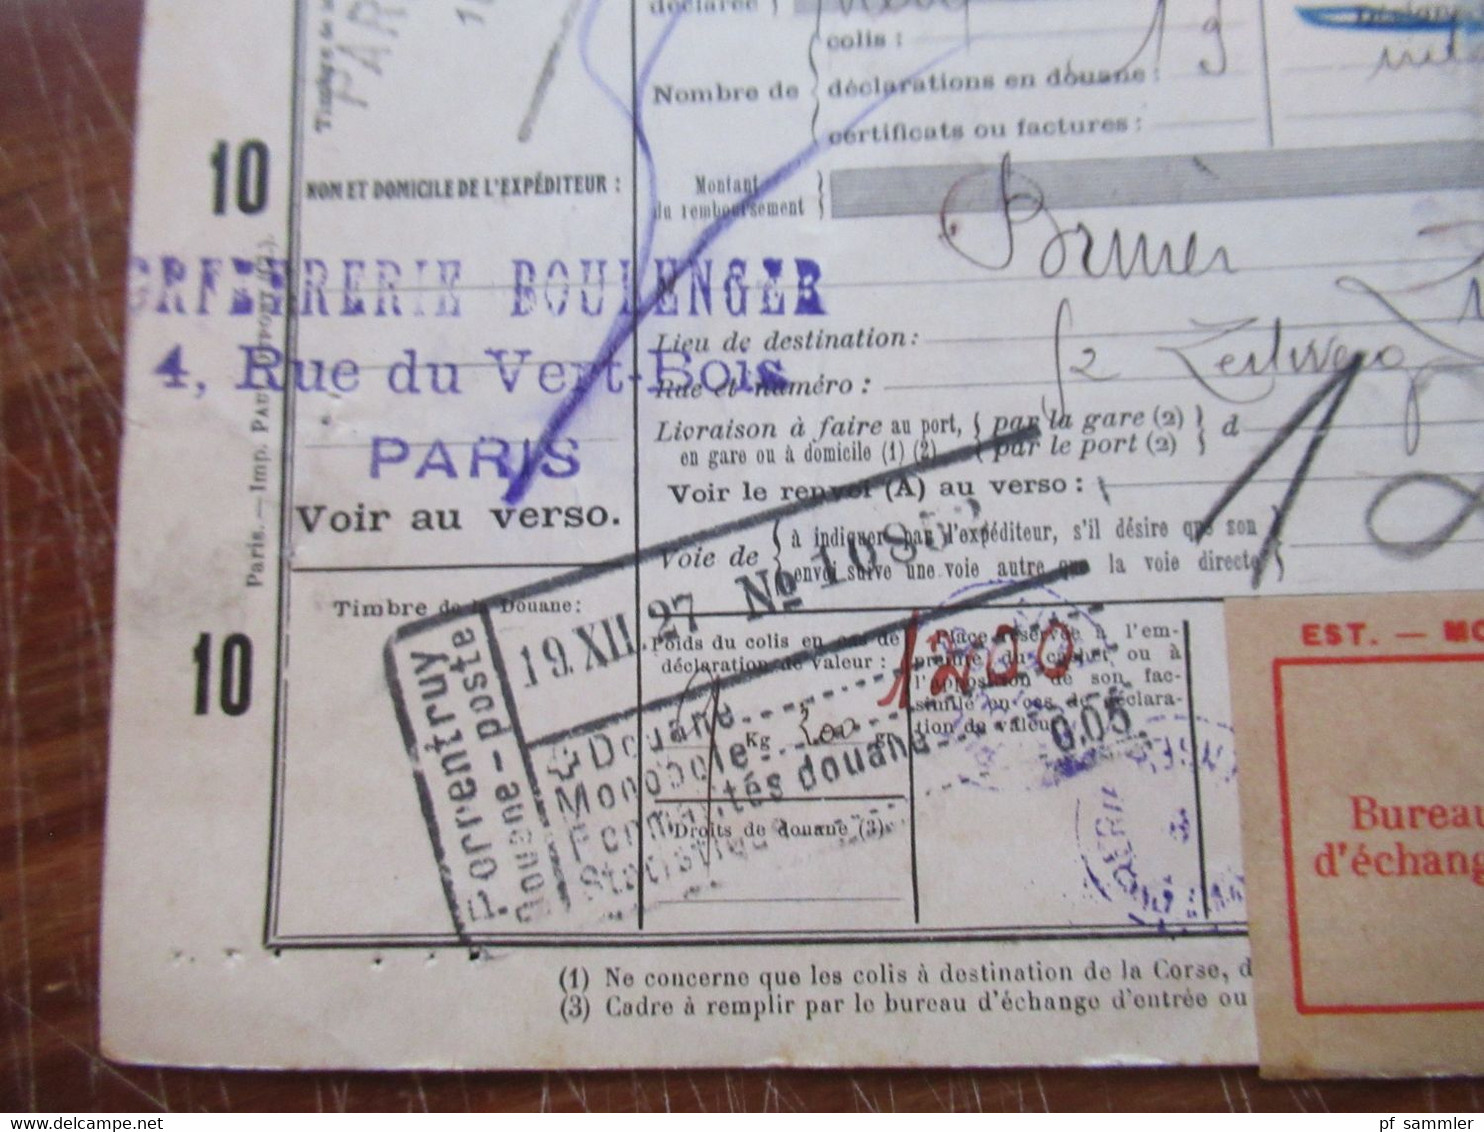 Frankreich 1927 Auslandspaketkarte Colis Postaux In Die Schweiz Valeur Declaree / Paris - Est Mit Vielen Stempeln!! - Lettres & Documents